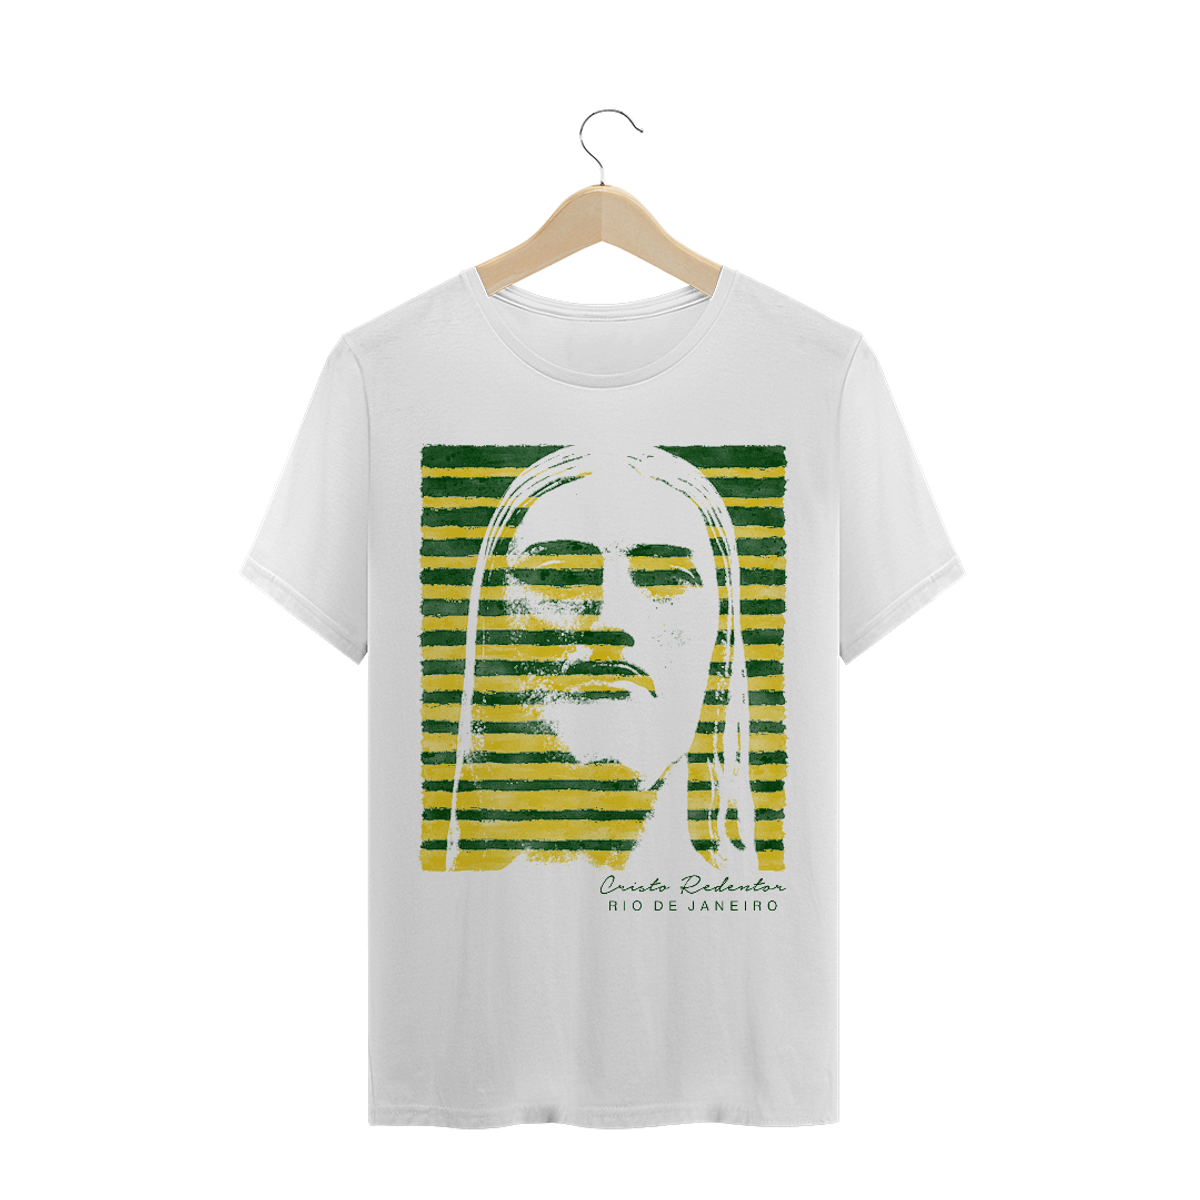 Nome do produto: Camiseta Masculina Cristo Redentor verde e amarelo